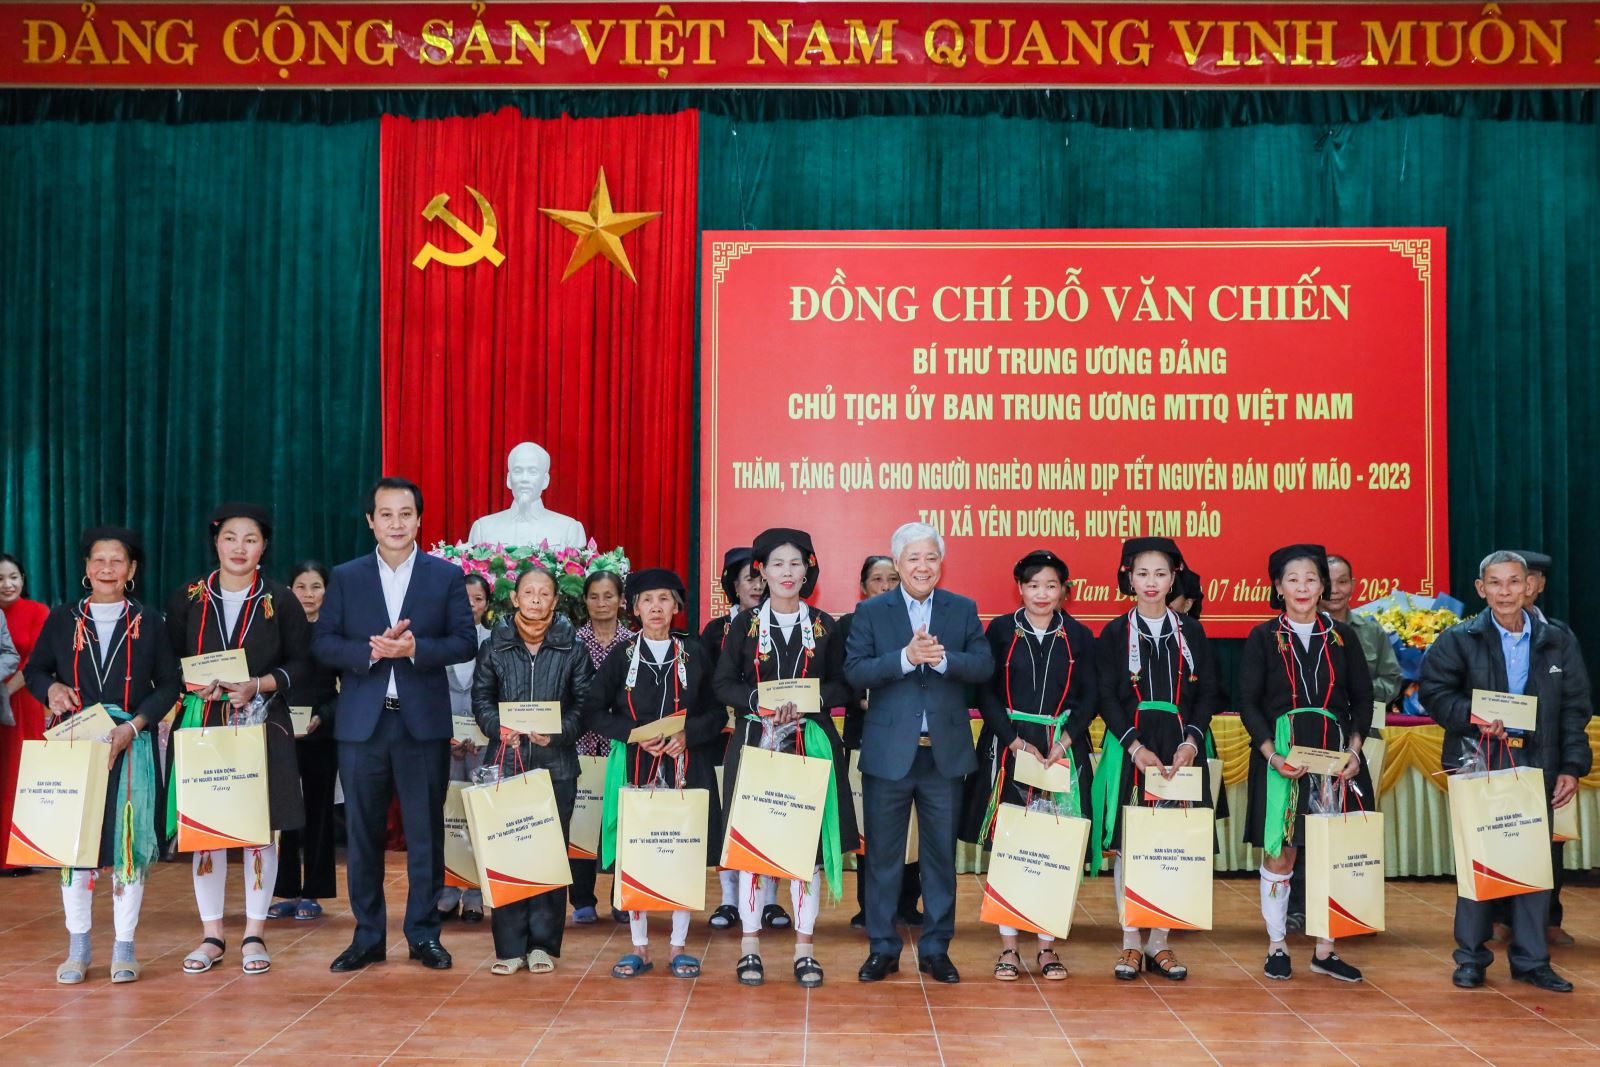 Chủ tịch UBTƯ MTTQ Việt Nam Đỗ Văn Chiến tặng quà hộ nghèo trên địa bàn xã Yên Dương, huyện Tam Đảo, tỉnh Vĩnh Phúc.